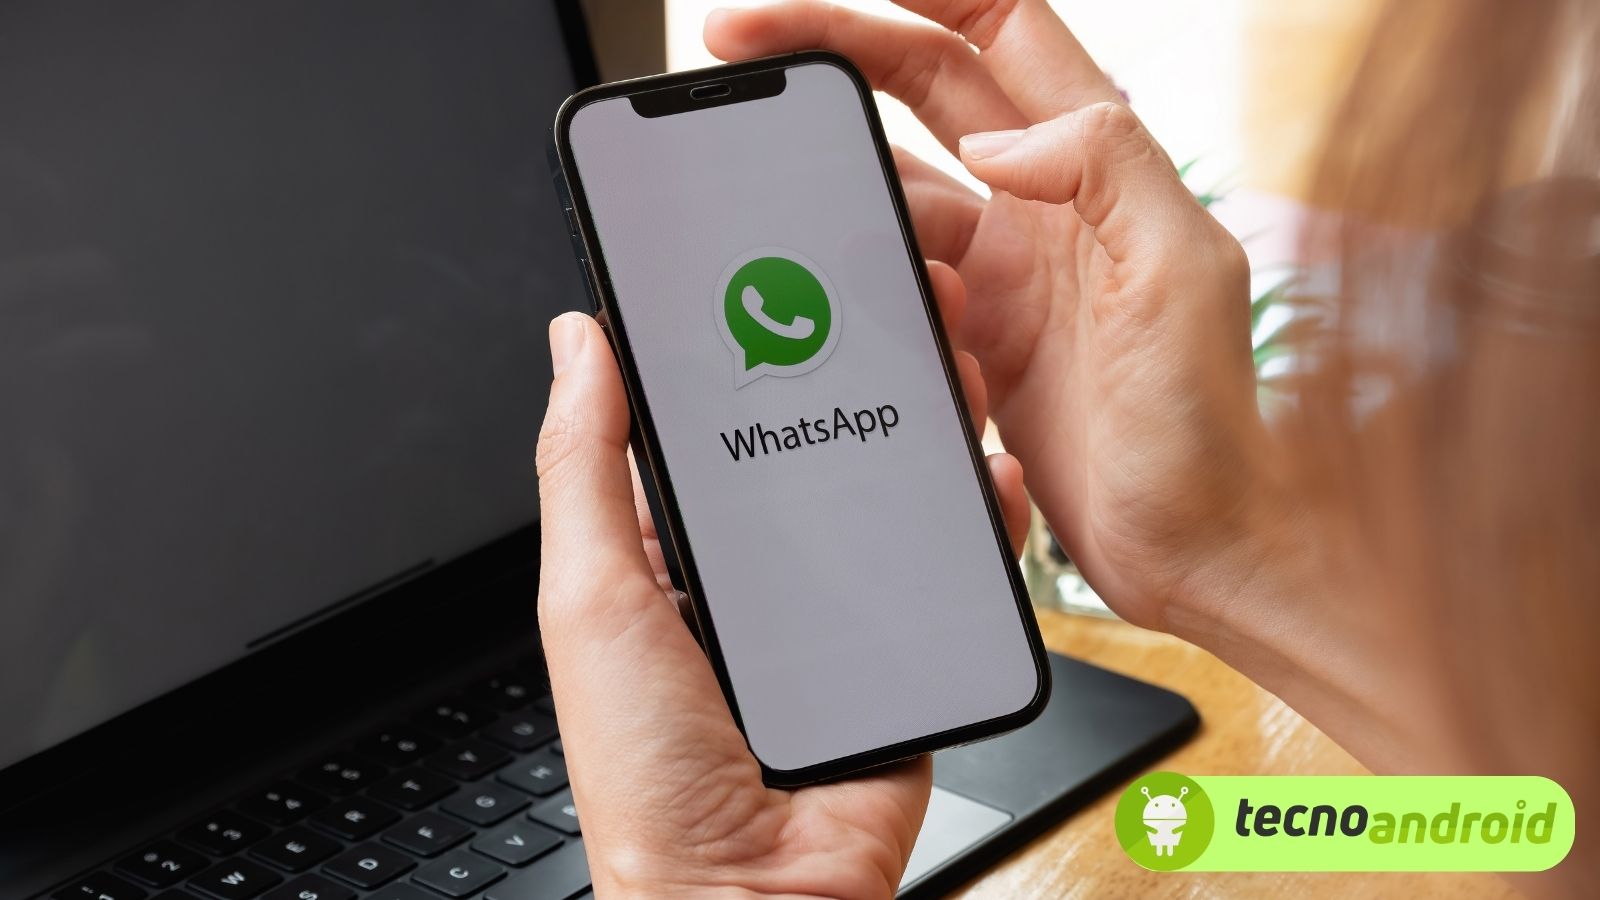 WhatsApp: in arrivo nuove funzioni social da fare in gruppo 